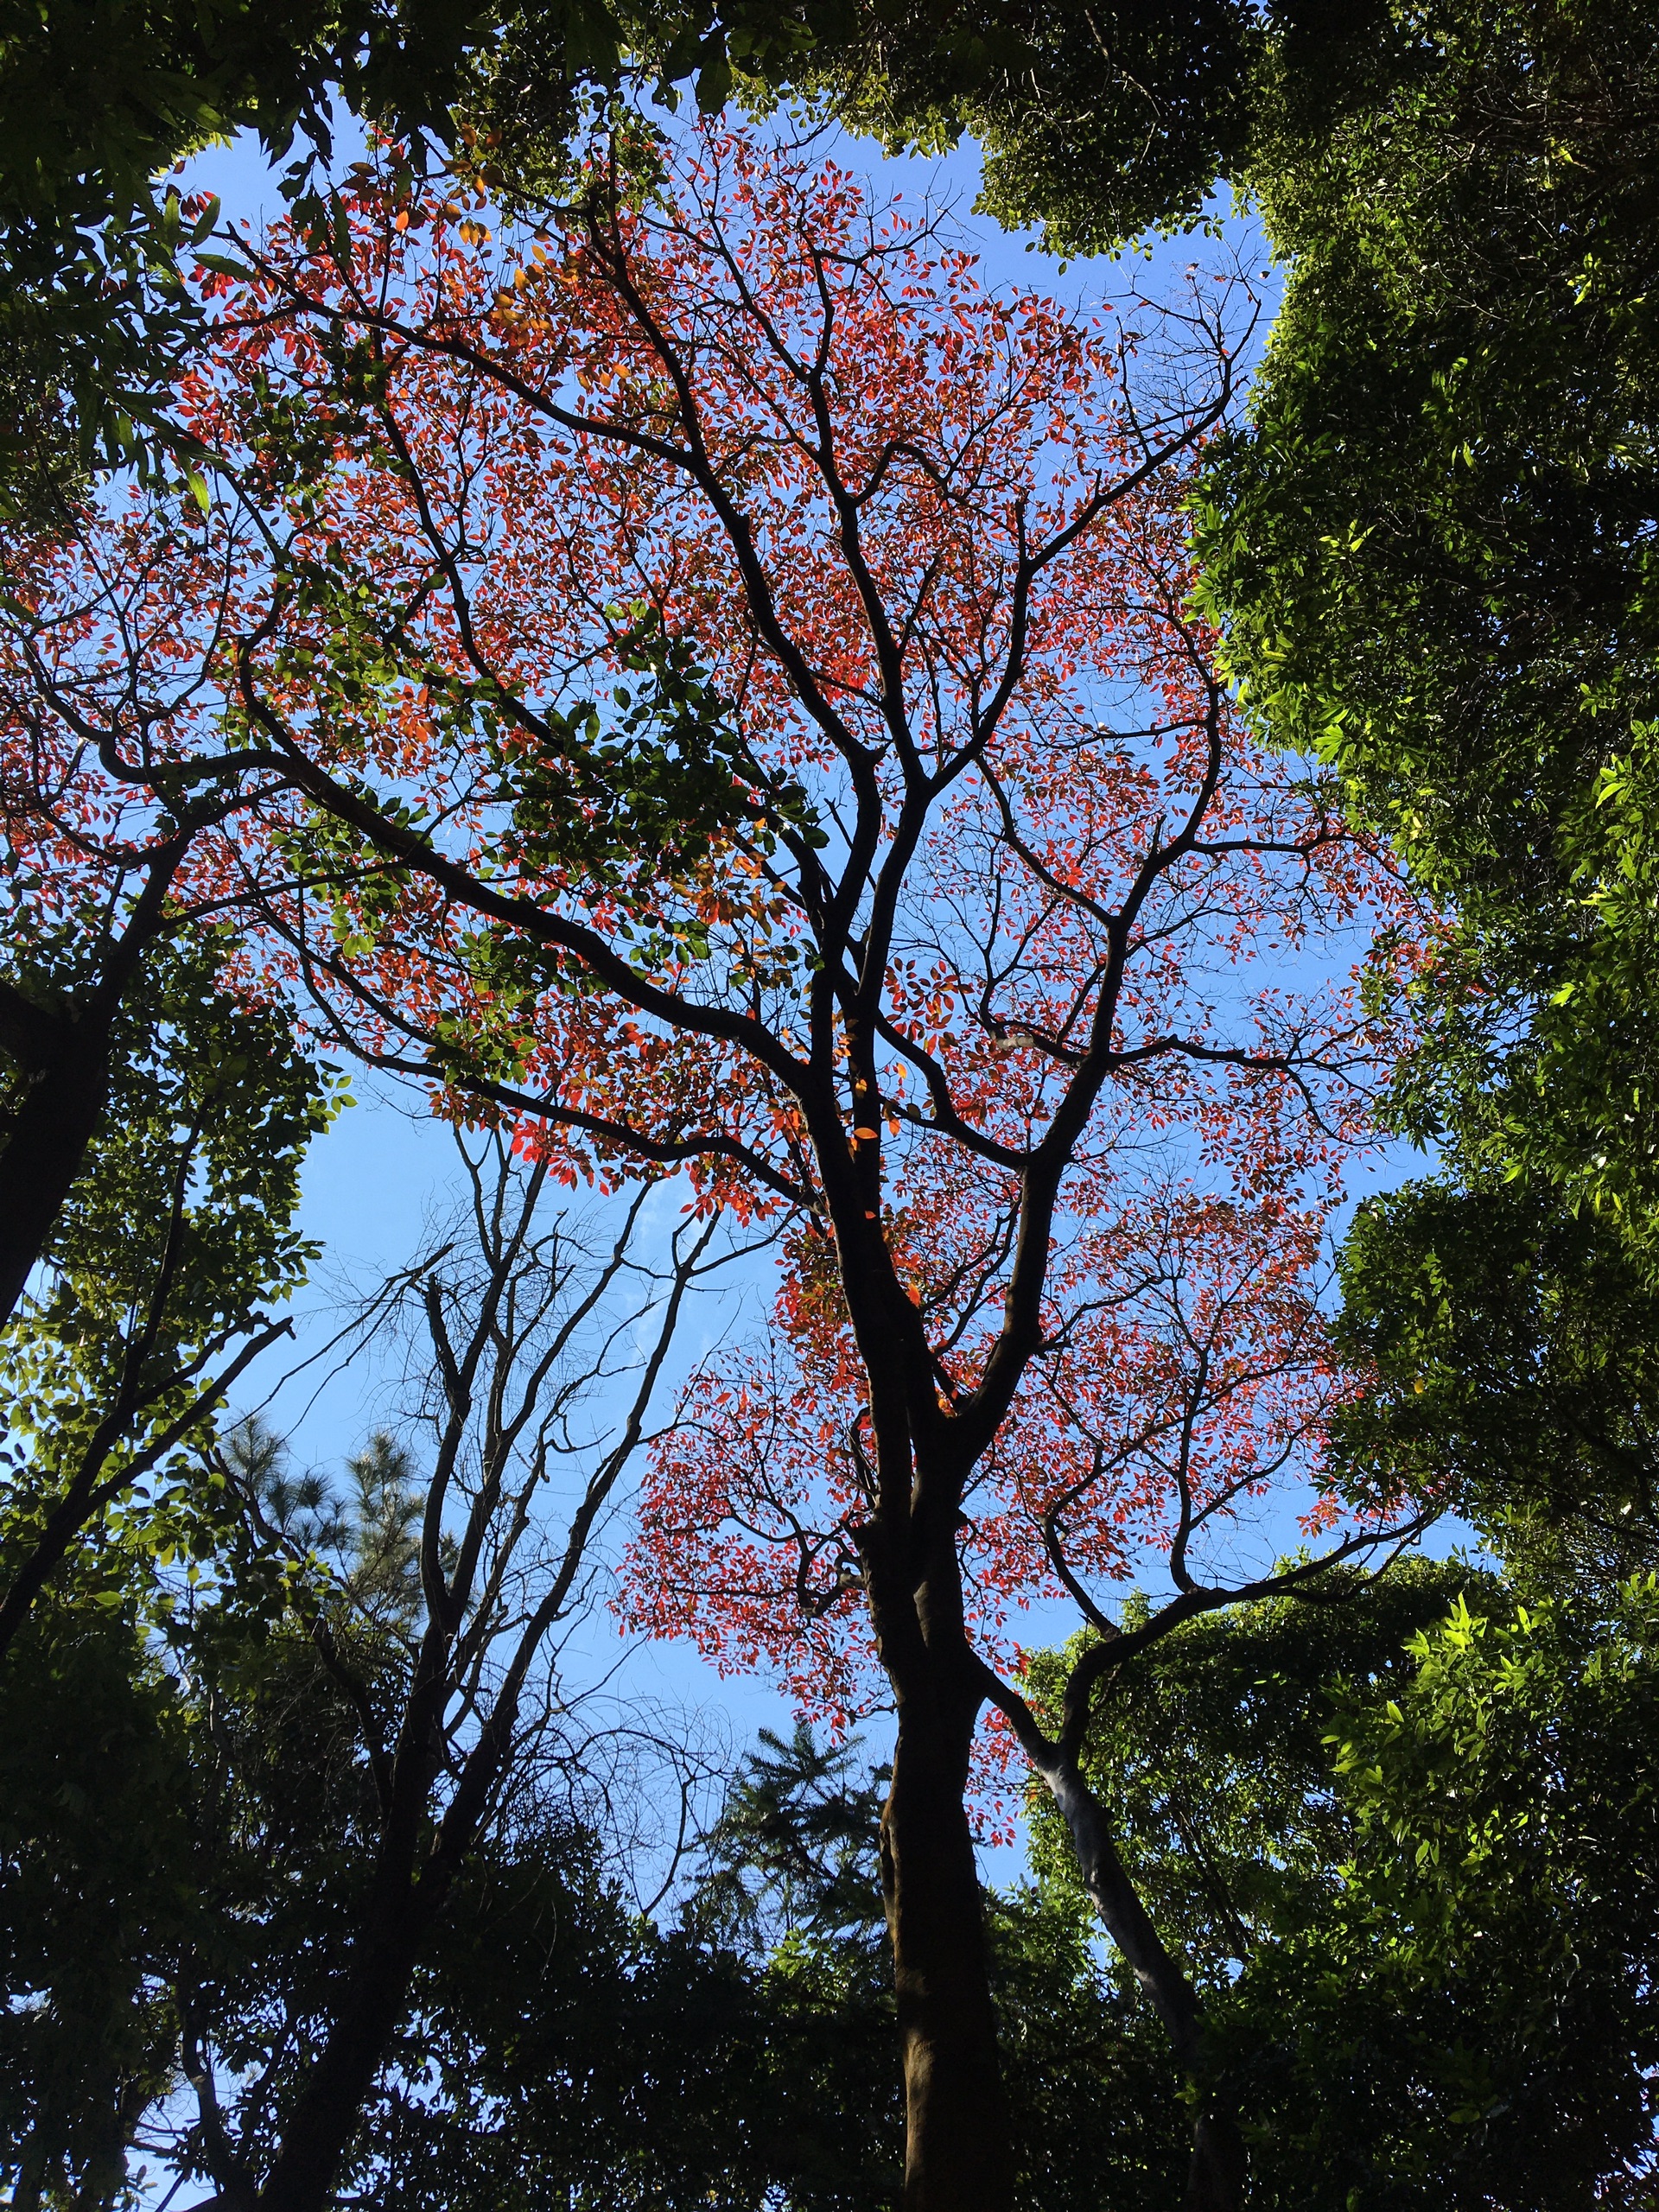 石门国家森林公园——红枫其实并不红，多是金黄暗红色，路上远观的美过观赏点